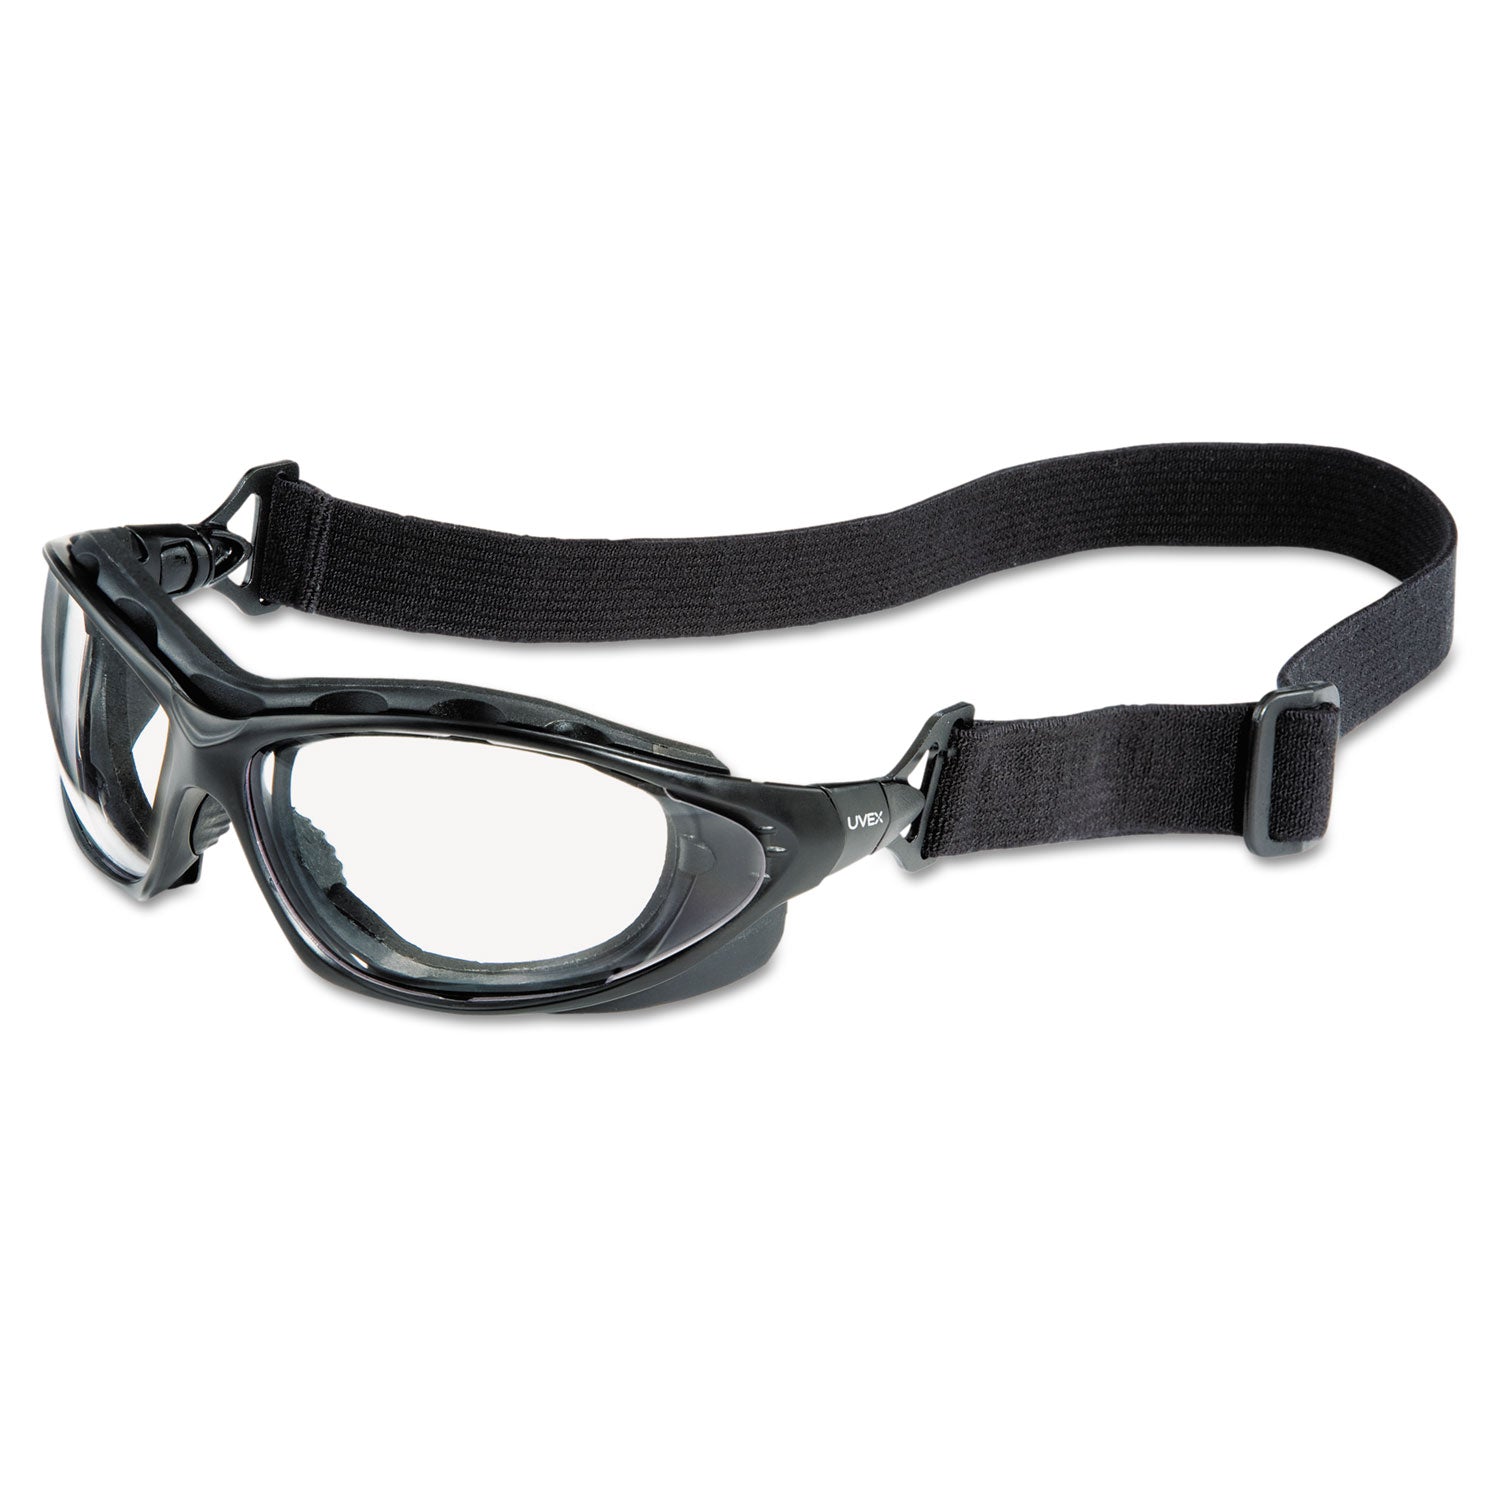 Seismic Sealed Eyewear, Clear Uvextra AF Lens, Black Frame - 